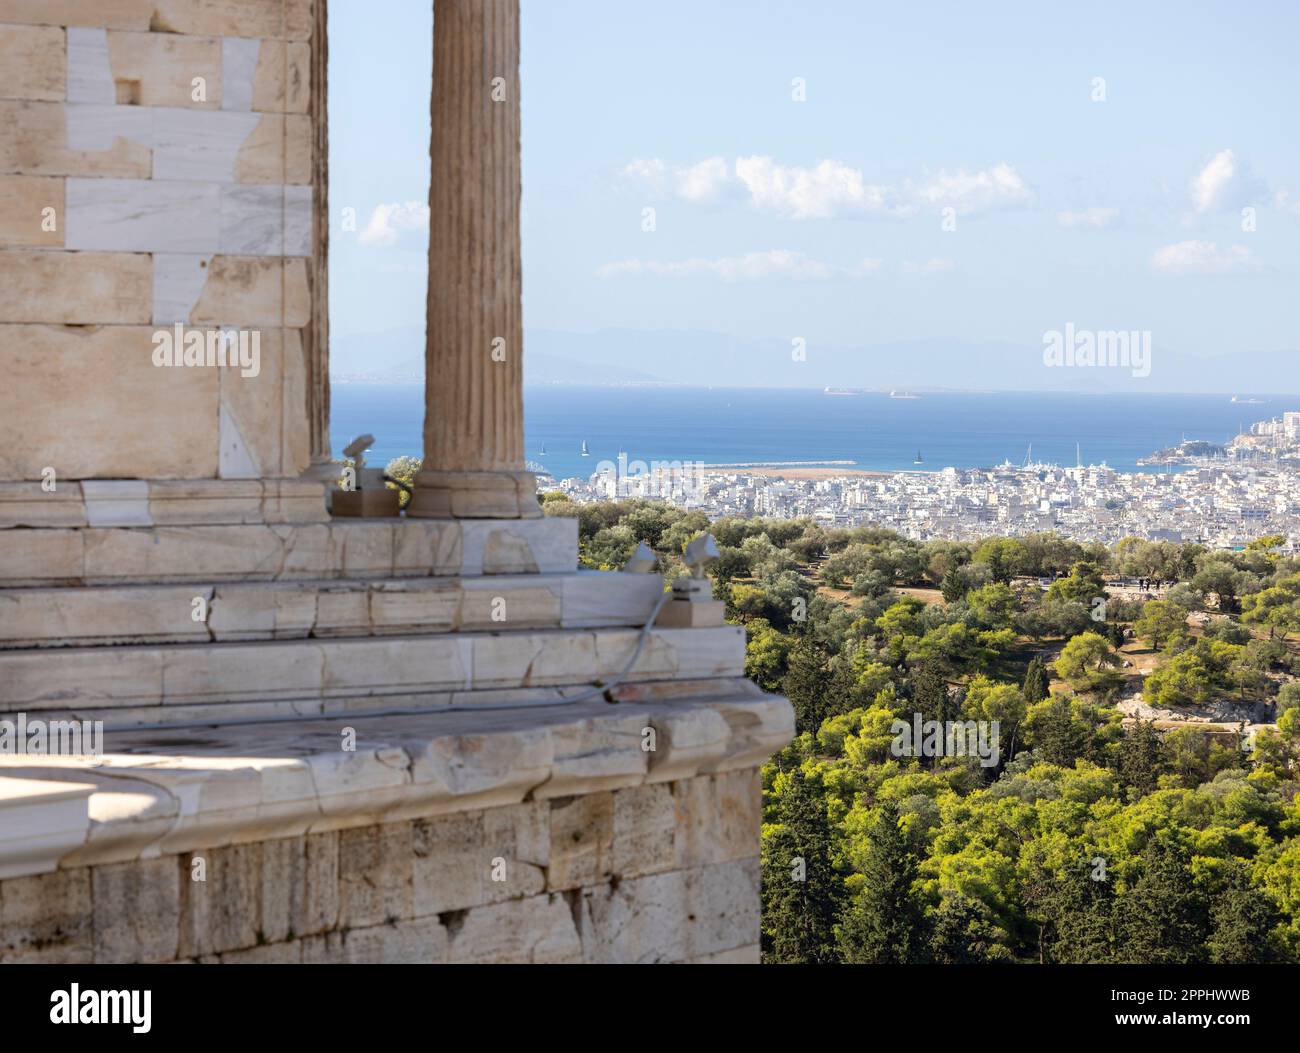 Piraeus athena hi-res stock photography and images - Alamy